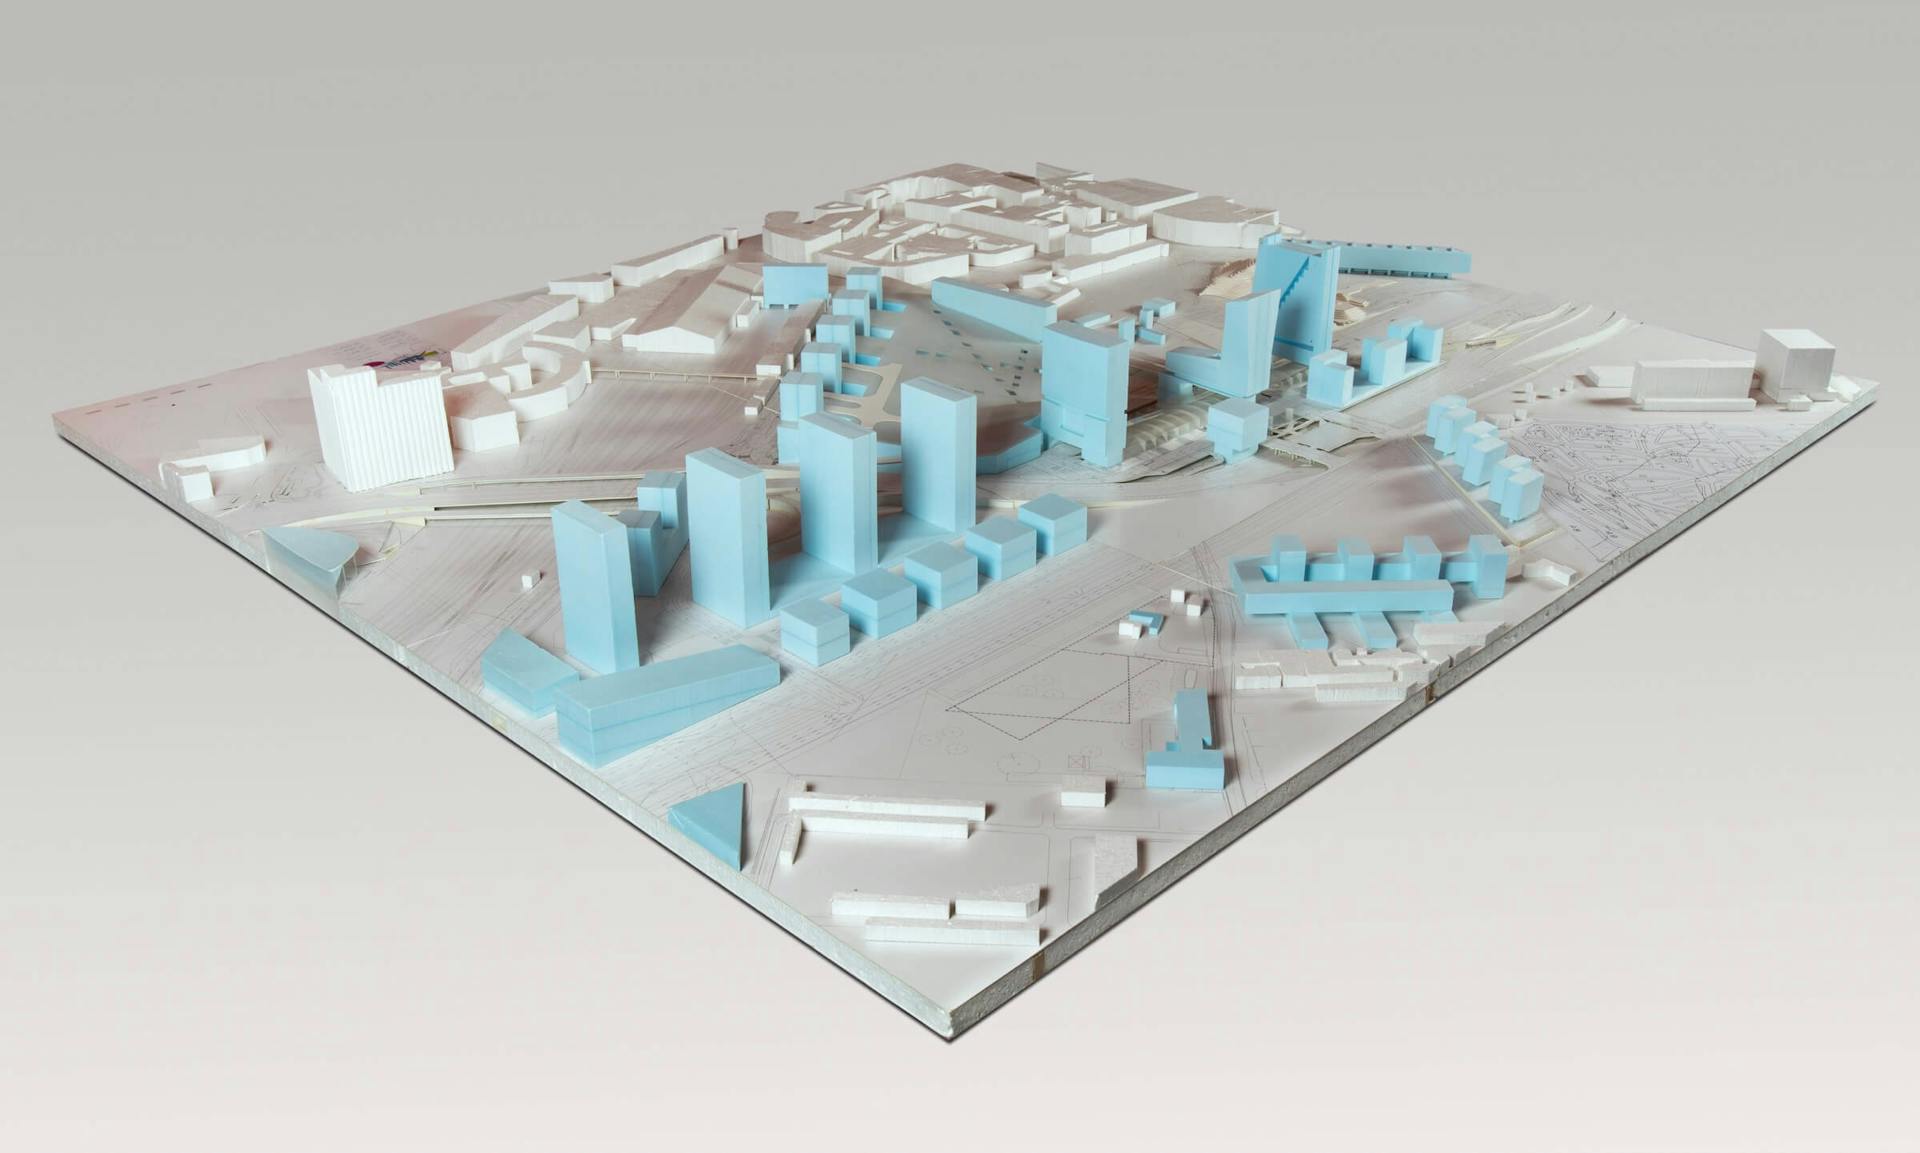 Maquette van het stedenbouwkundig plan, met hoogbouw boven het TGV-station. Collectie: NAi, Archief OMAR. 